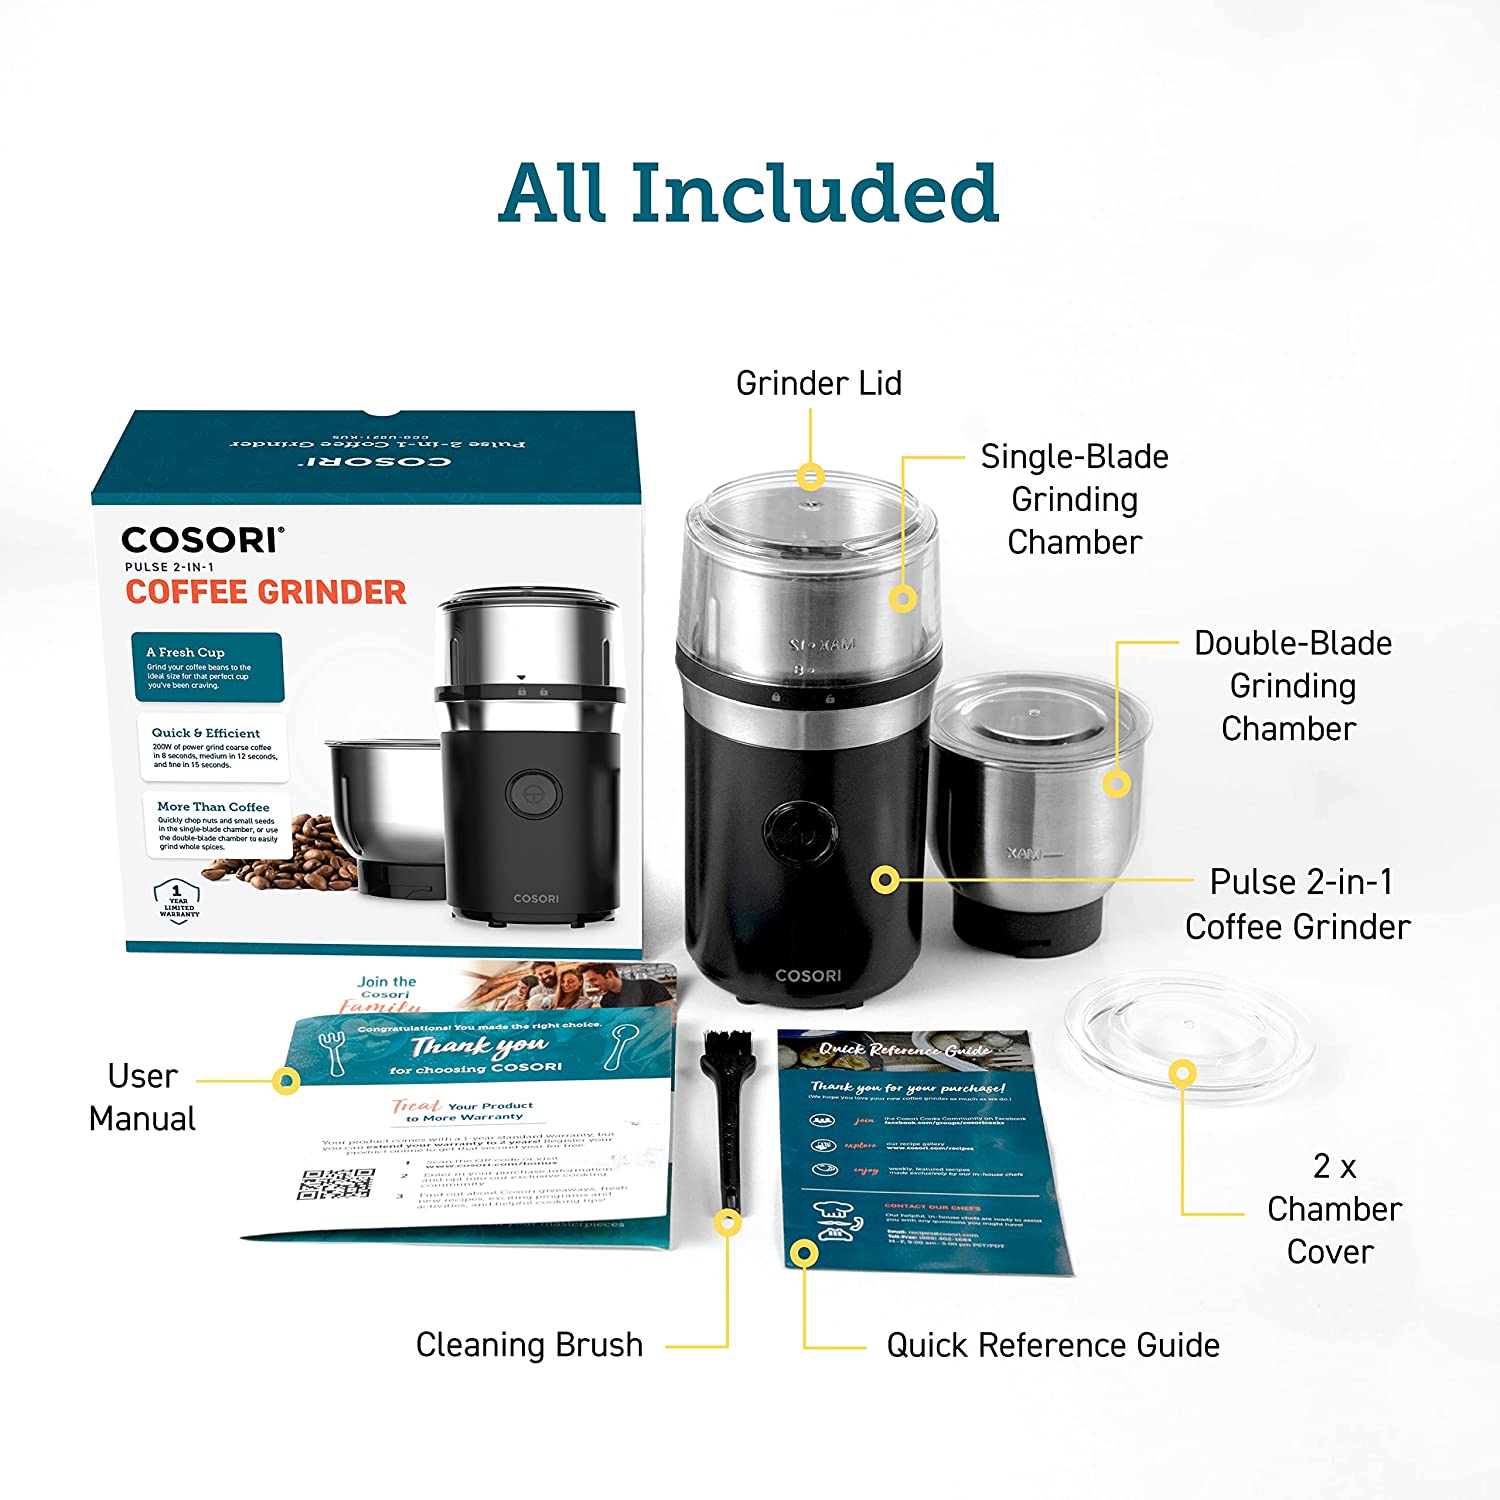 Molinillo eléctrico para especias, semillas, hierbas y granos de café, incluye 2 cuencos extraíbles de acero inoxidable, color negro Cosori